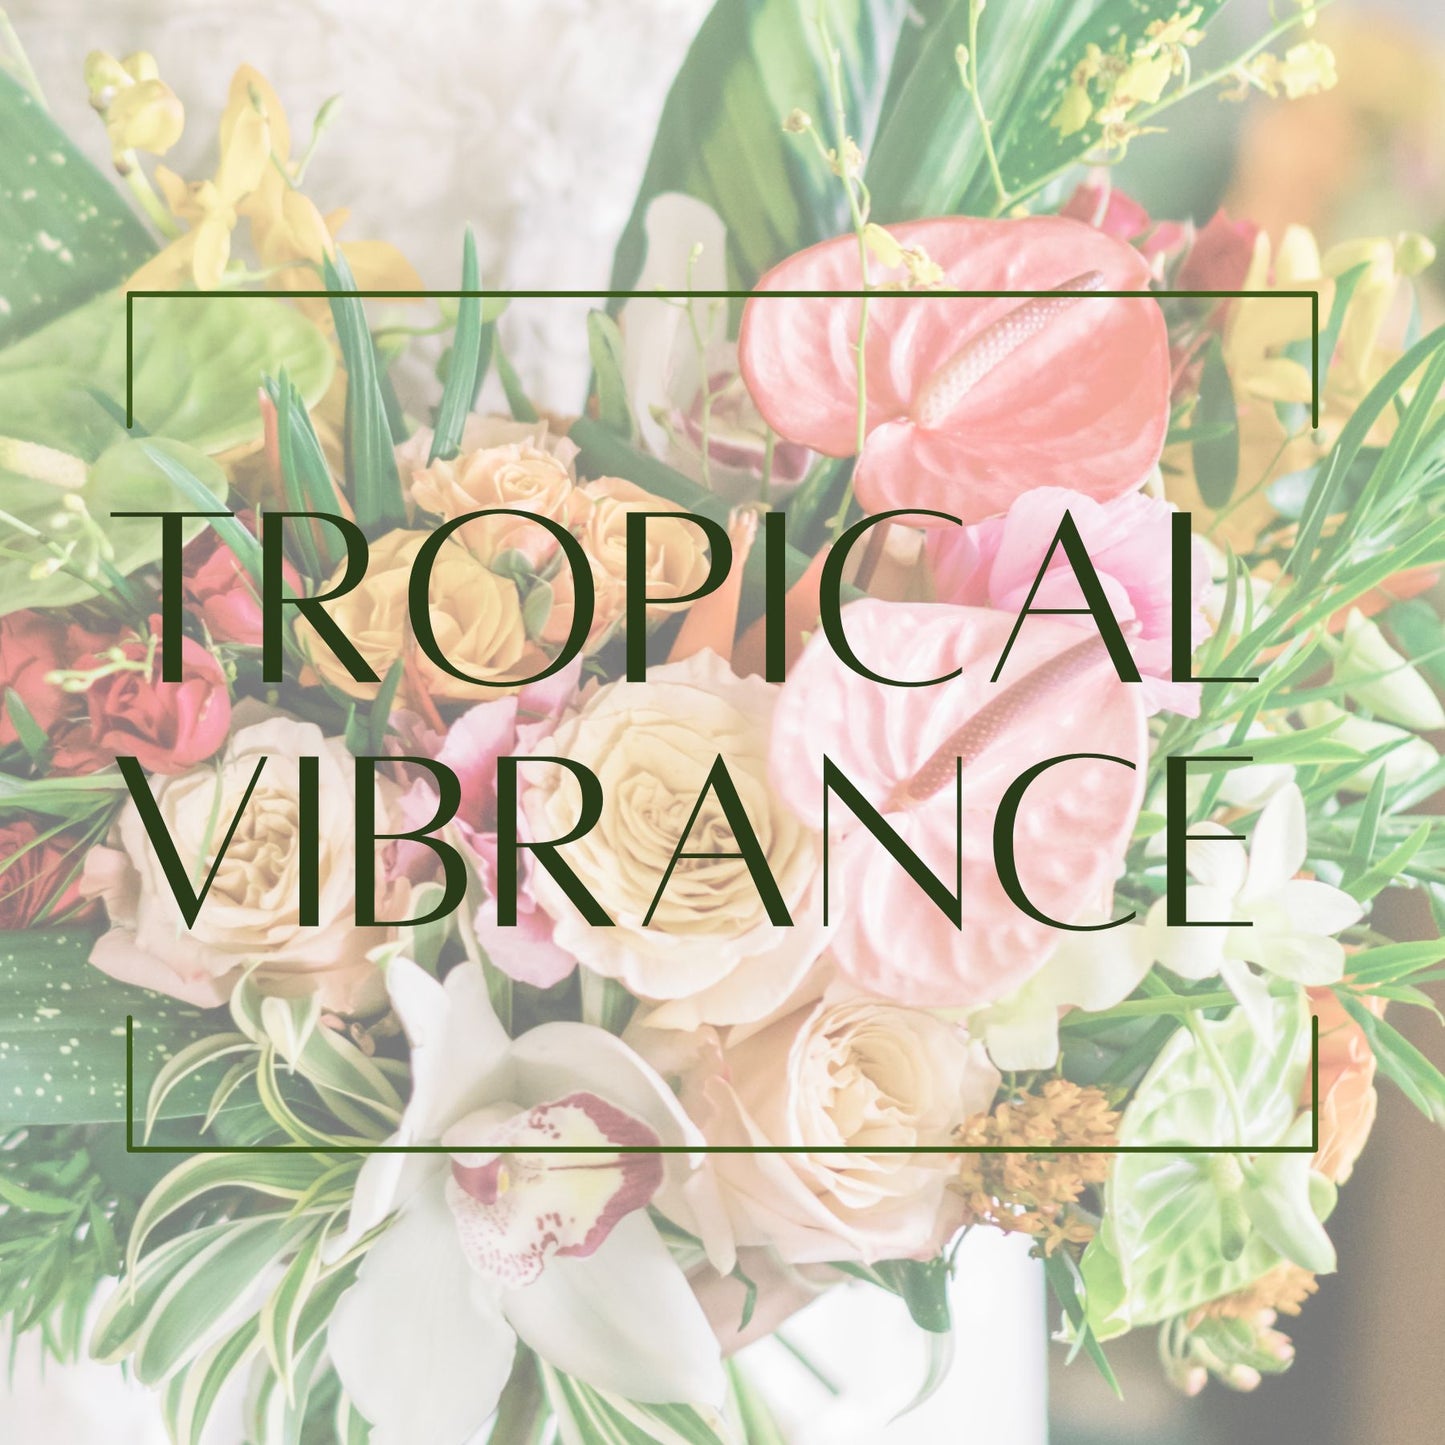 Tropical Vibrance - Bridal Bouquet